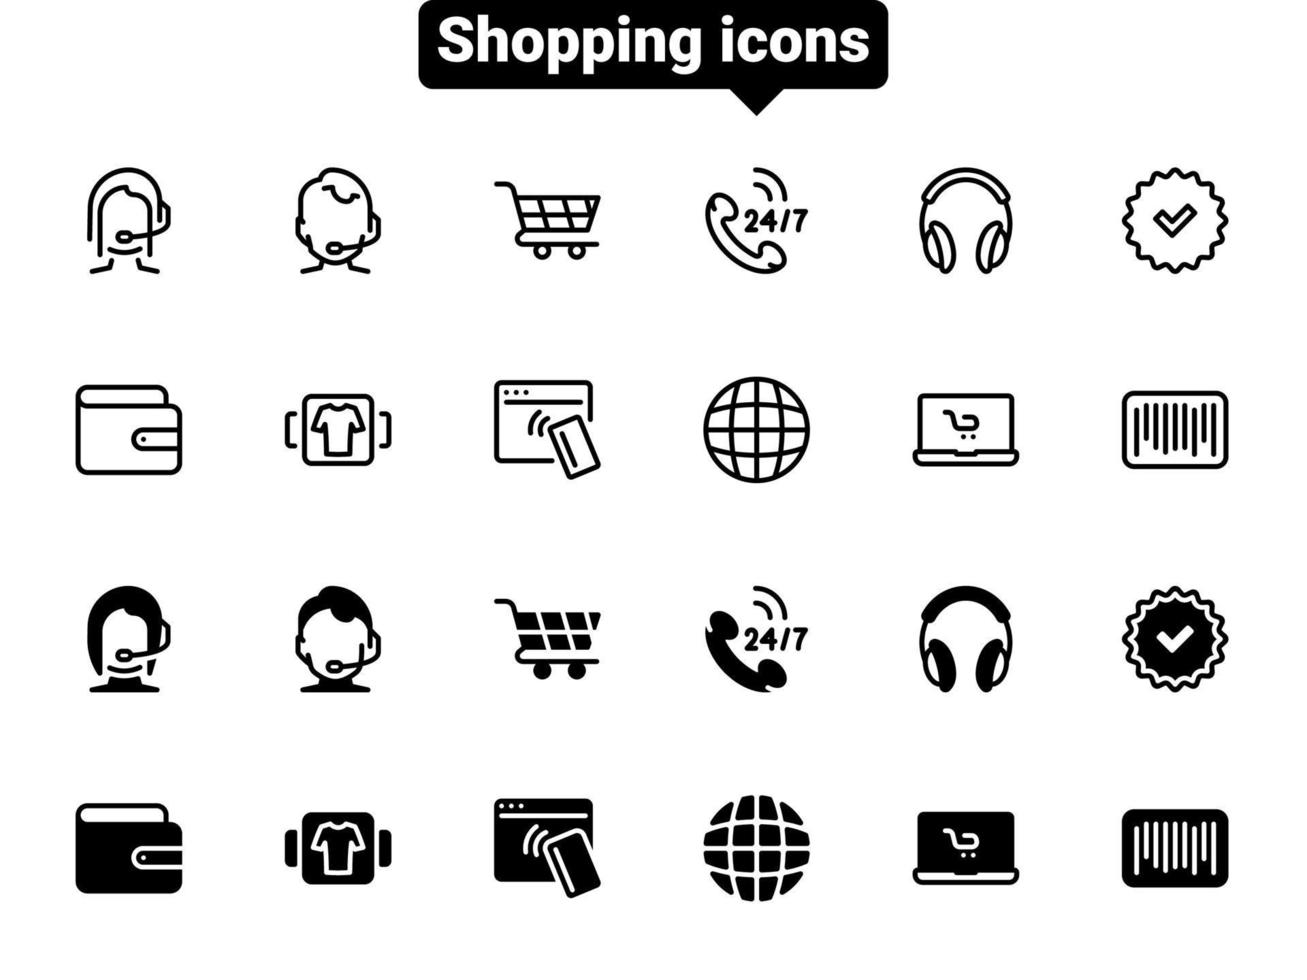 ensemble d'icônes vectorielles noires, isolées sur fond blanc. illustration plate sur un thème achetant et commandant des marchandises dans la boutique en ligne vecteur